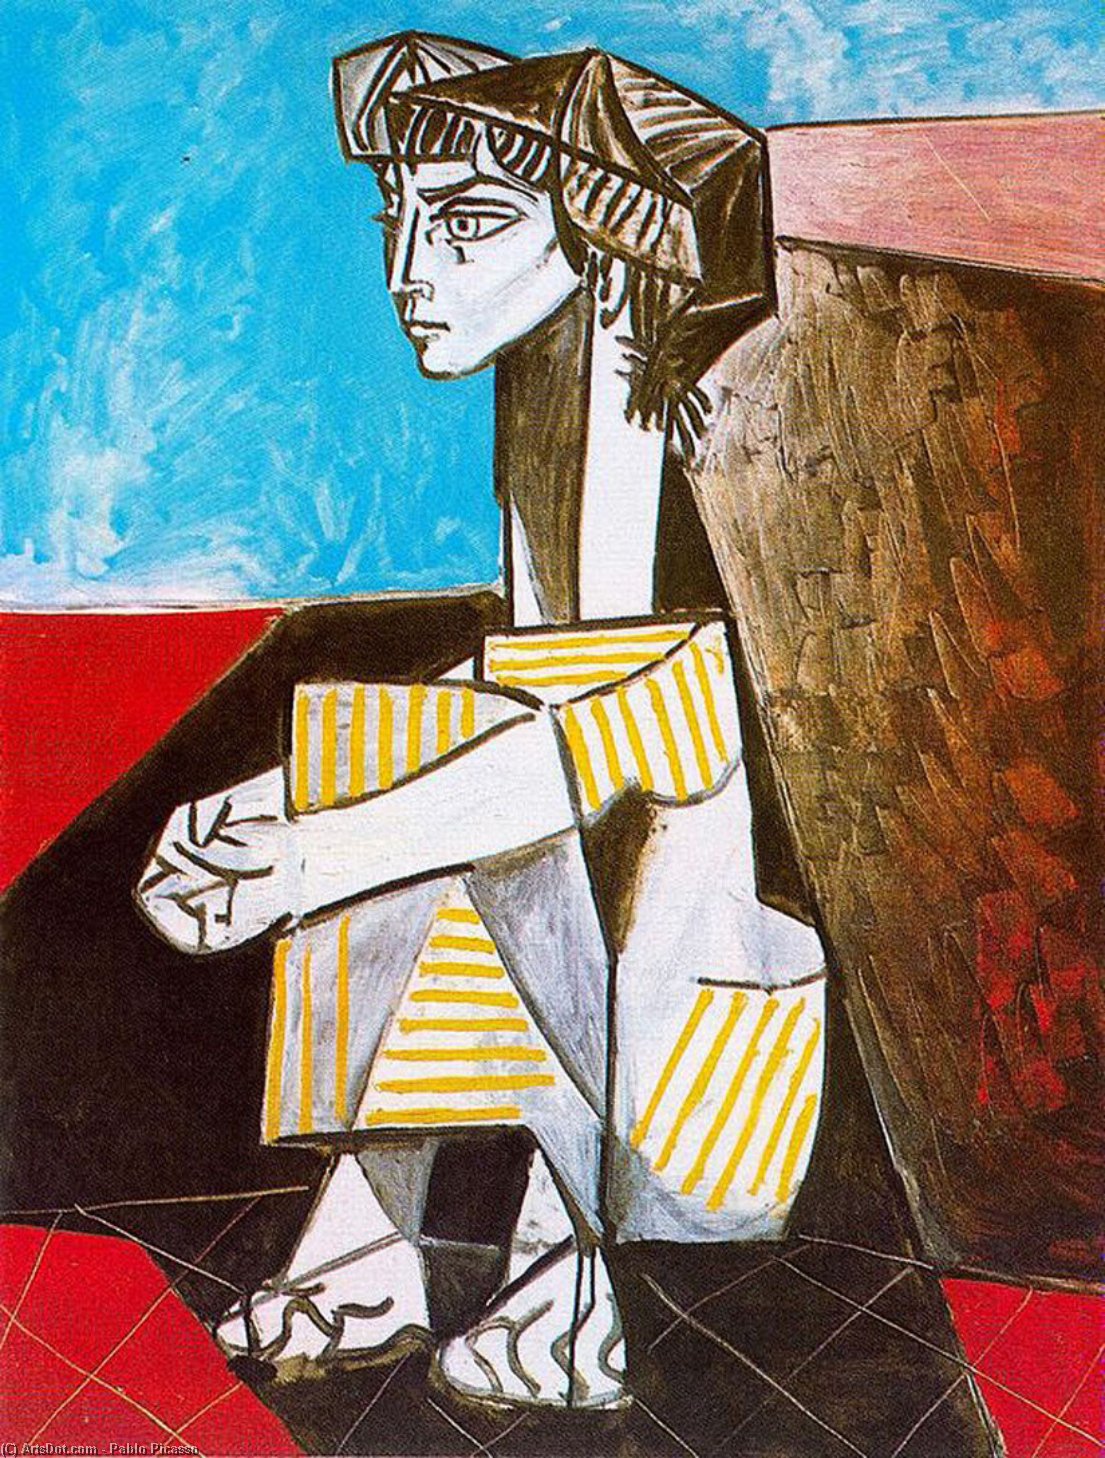 Wikoo.org - موسوعة الفنون الجميلة - اللوحة، العمل الفني Pablo Picasso - Portrait of Jacqueline Roque with her hands crossed